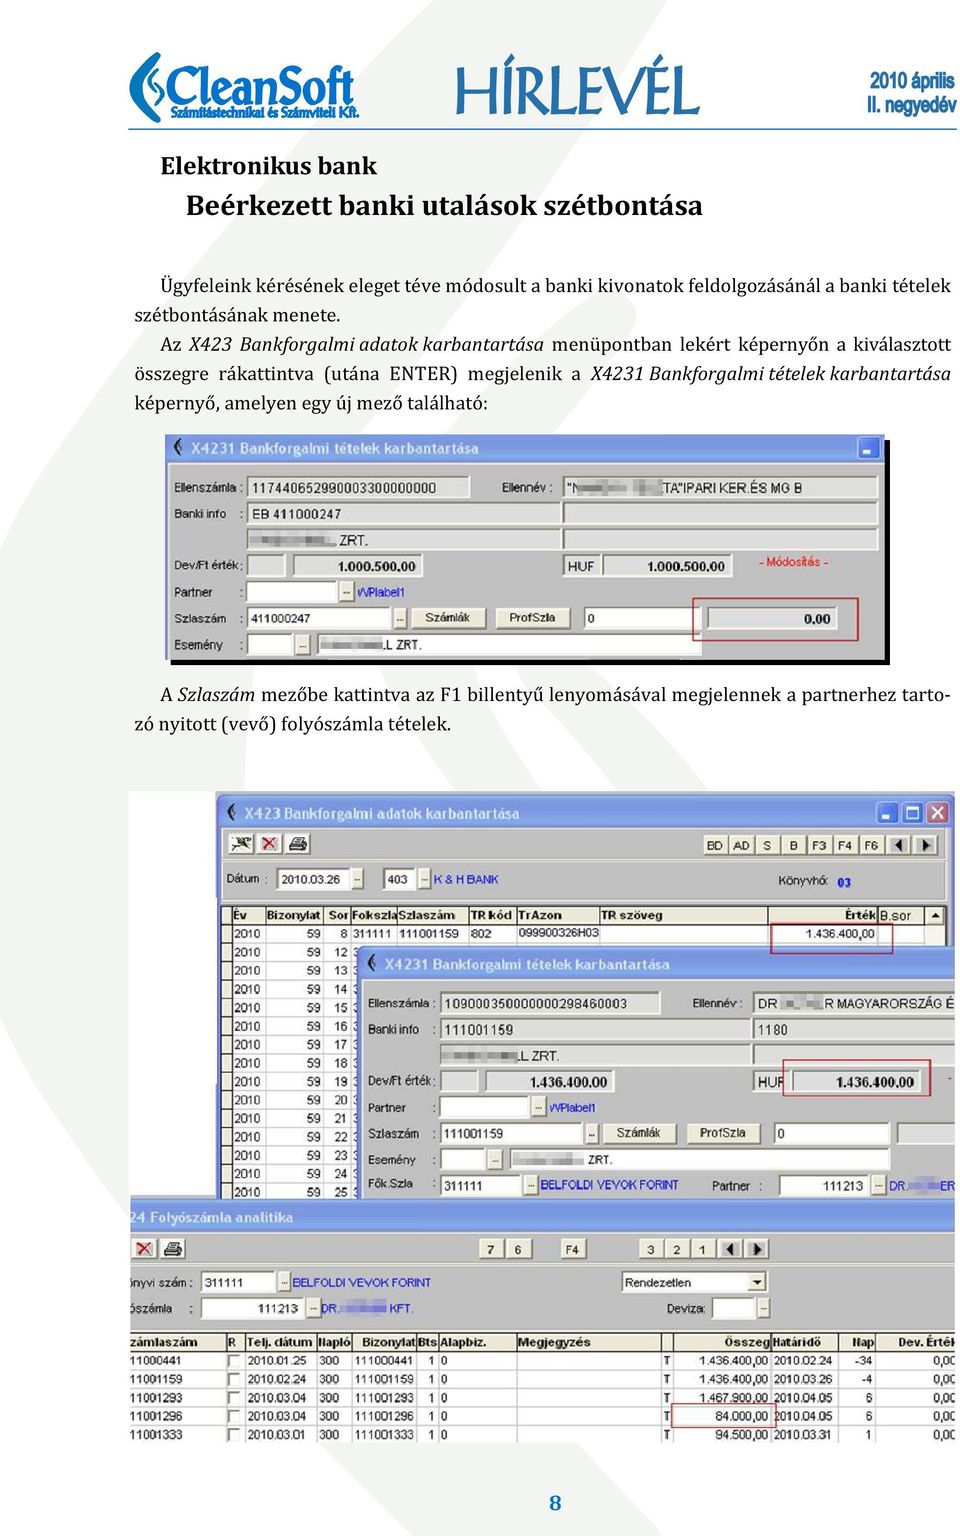 Az X423 Bankforgalmi adatok karbantartása menüpontban lekért képernyőn a kiválasztott összegre rákattintva (utána ENTER)